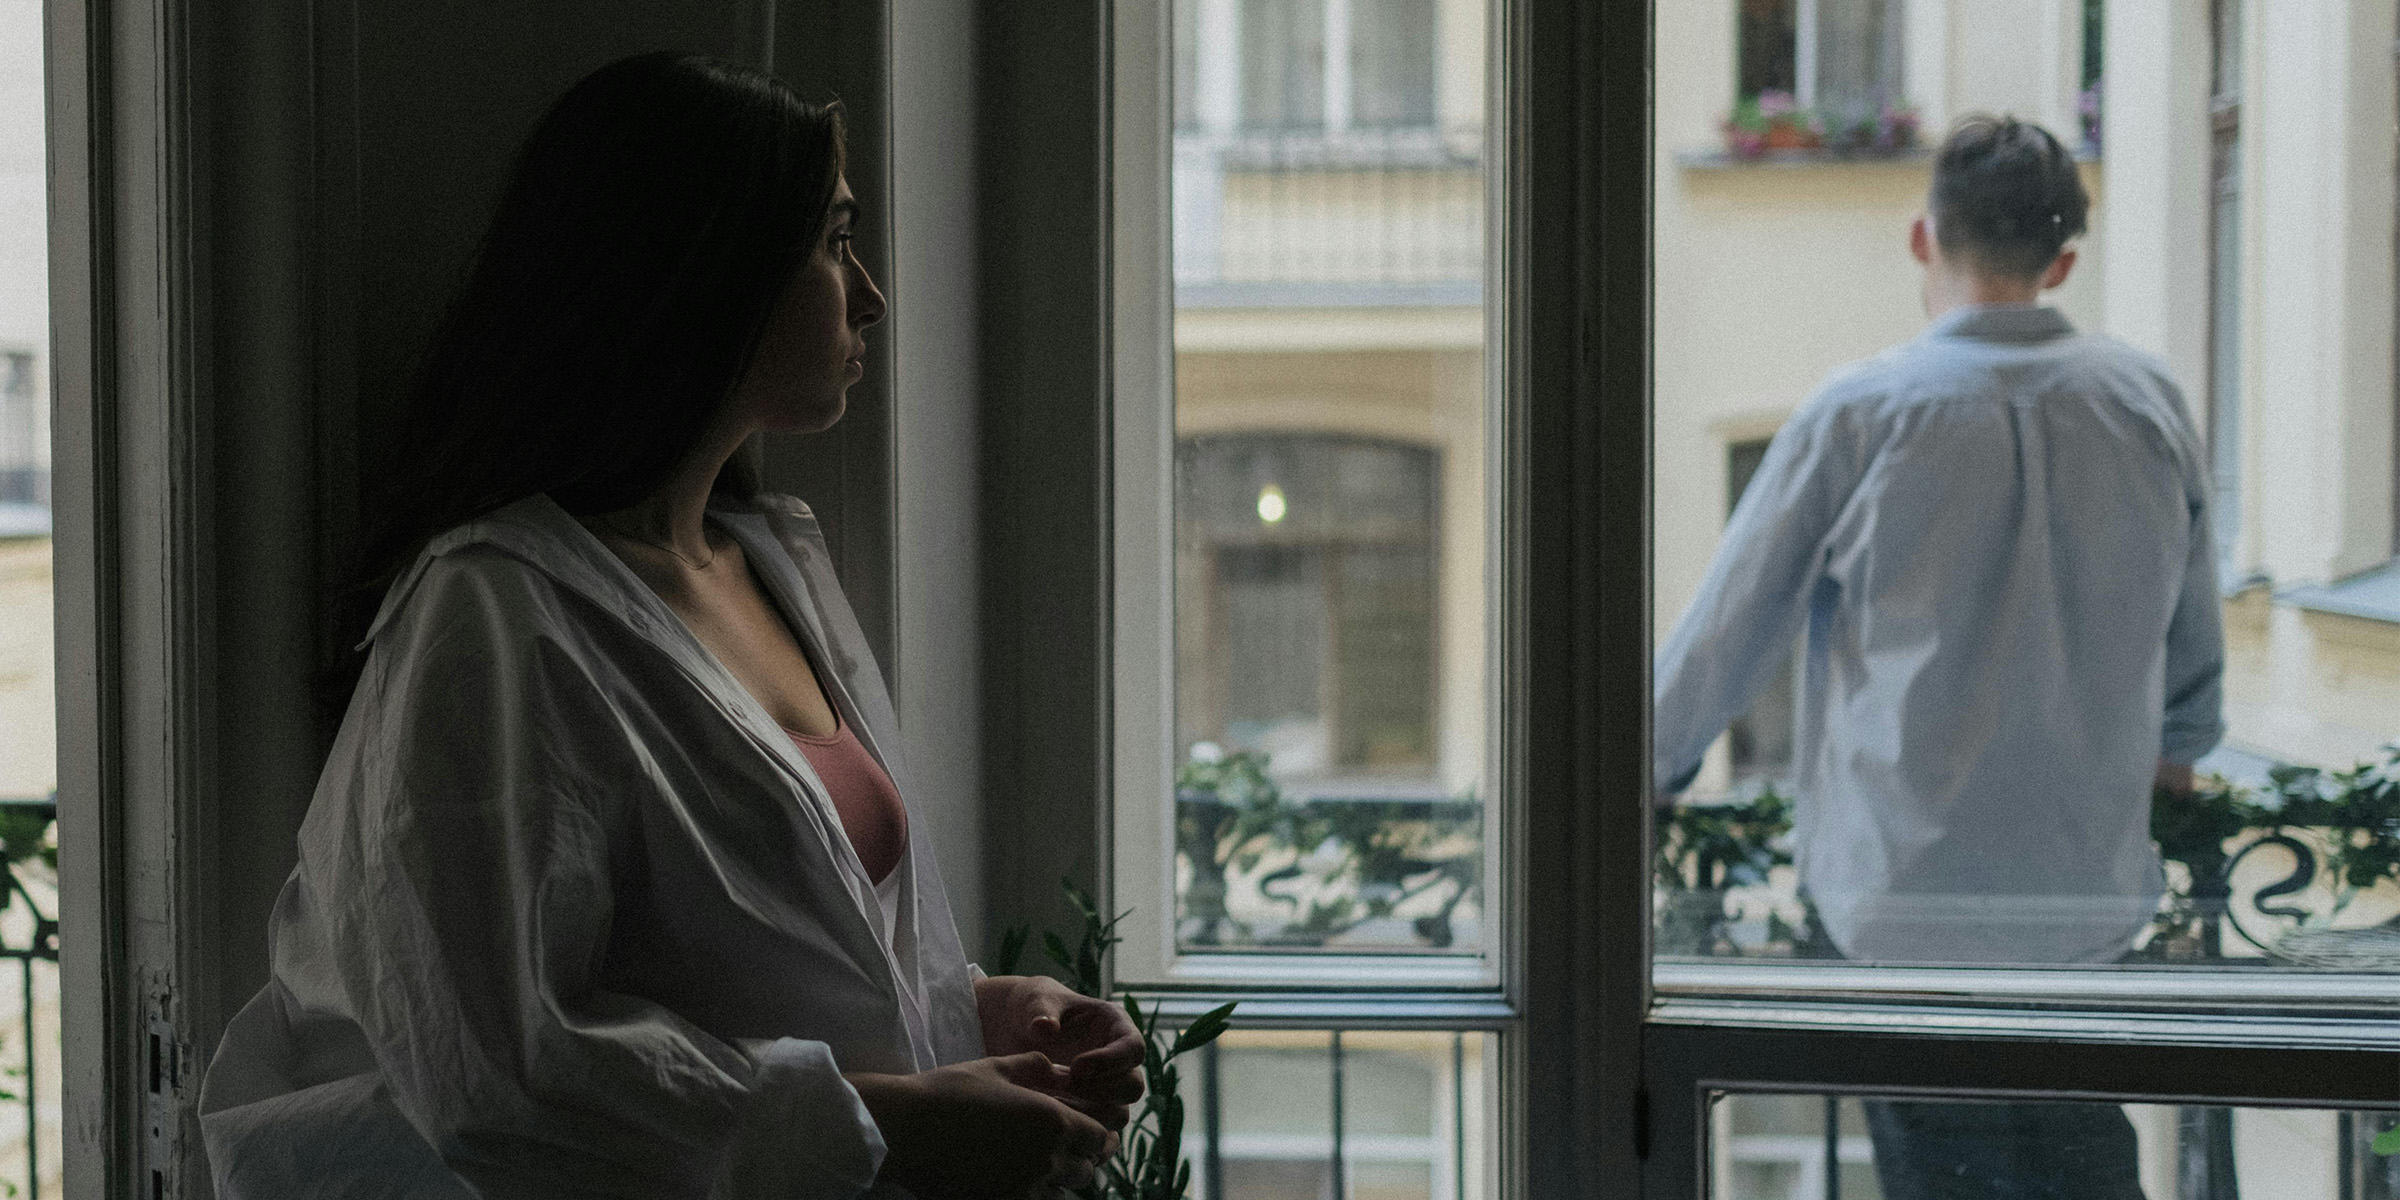 Frau beobachtet einen Mann auf einem Balkon | Quelle: Pexels